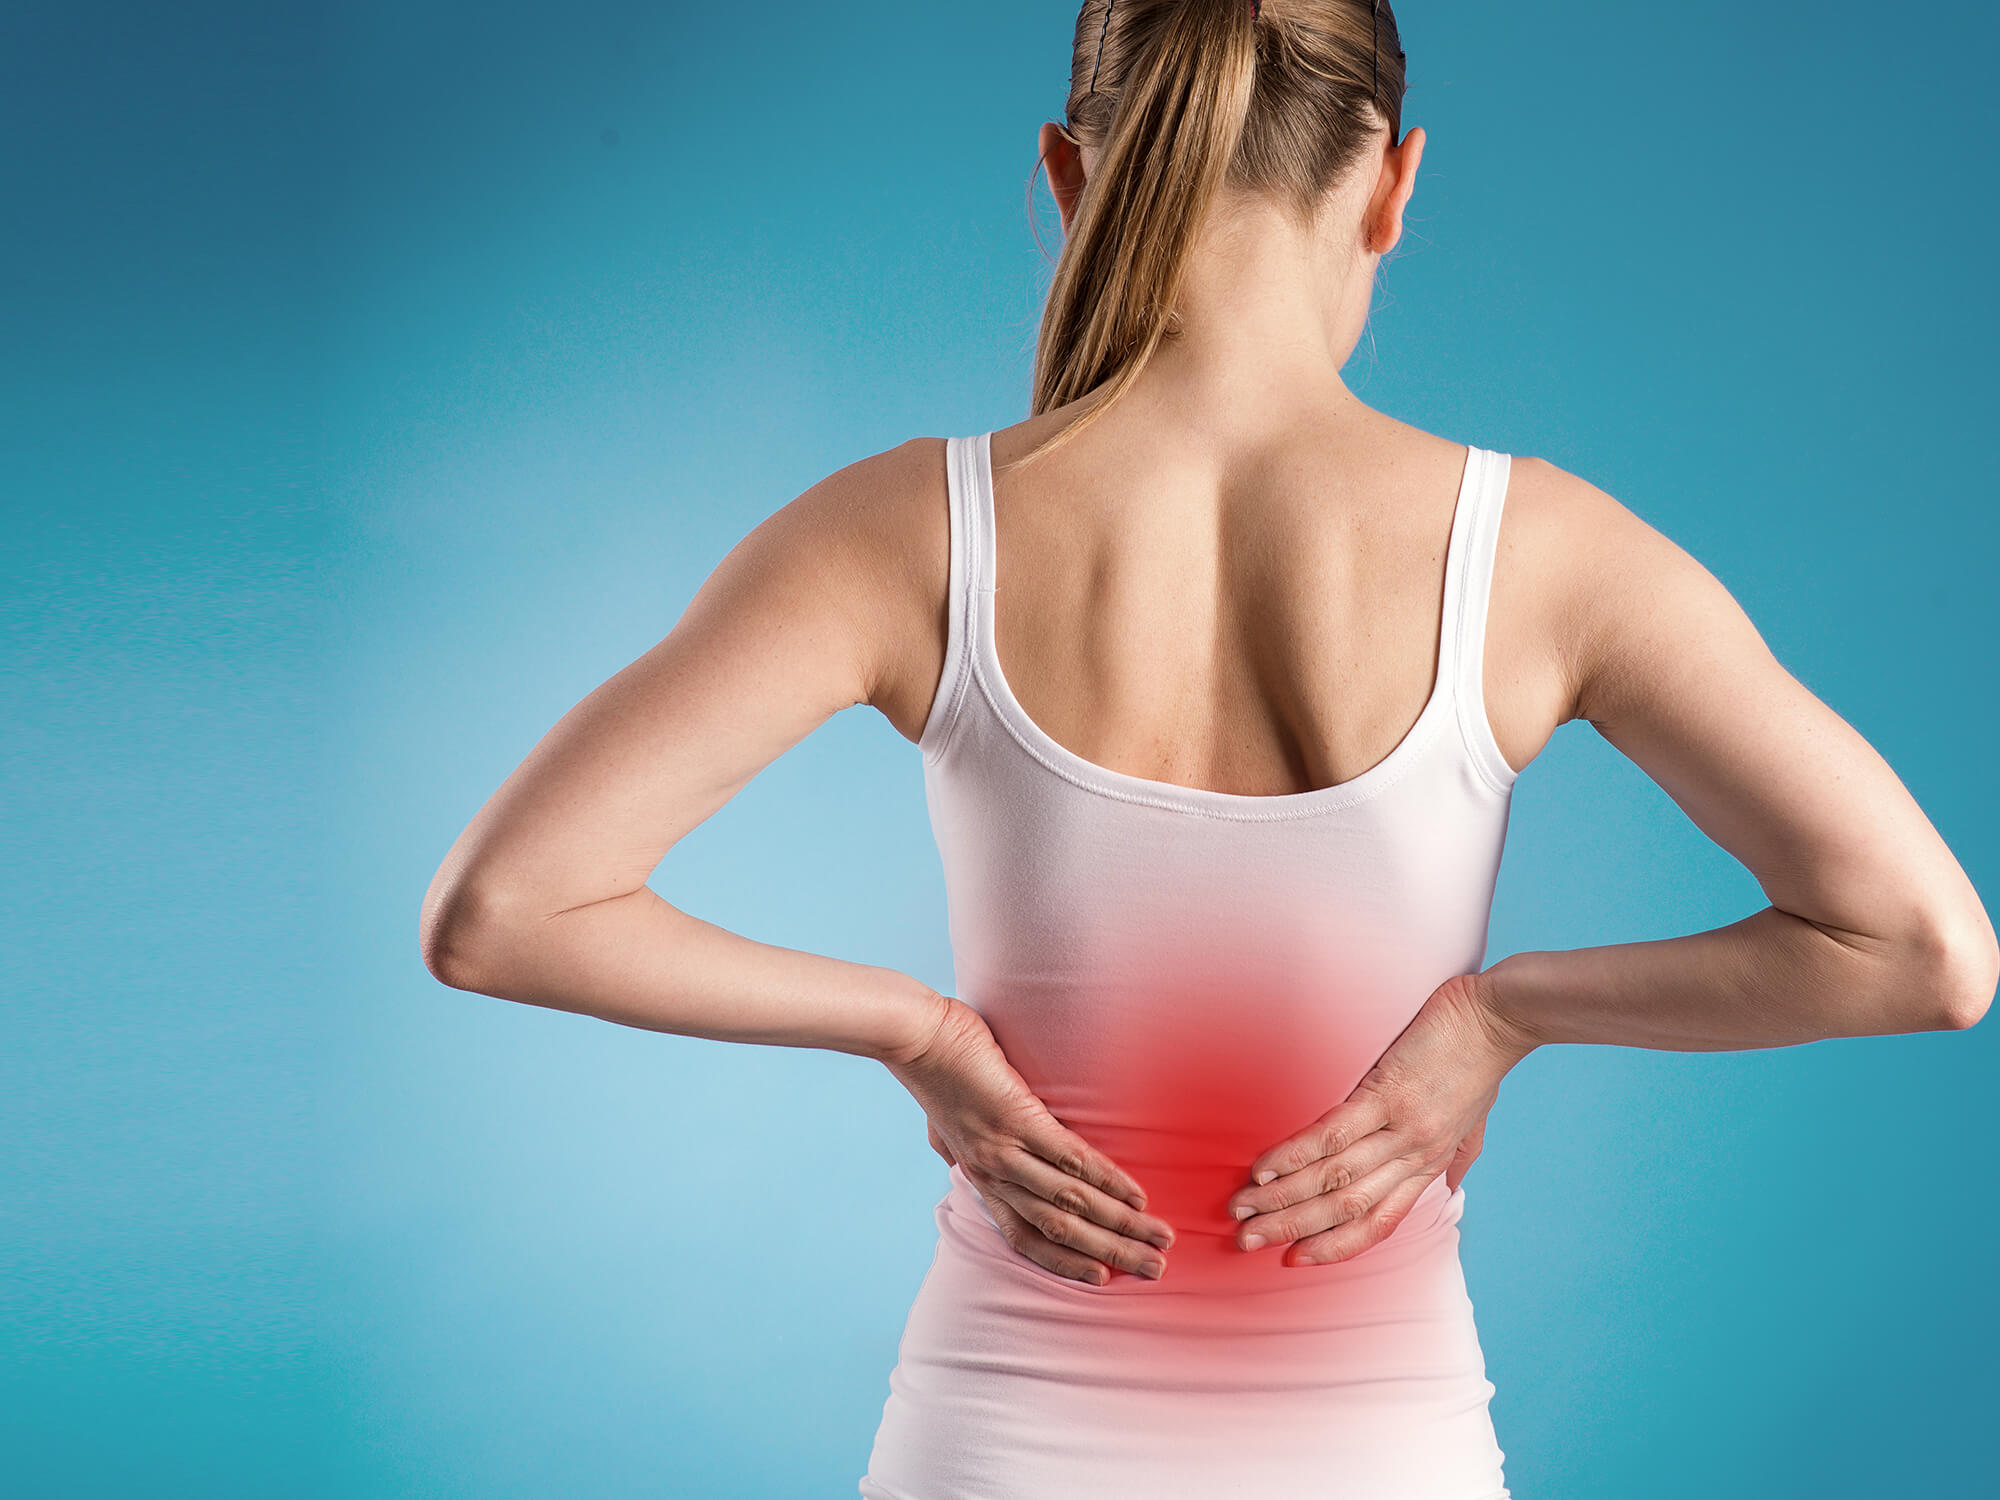 Bauch ursache rücken im ausstrahlung schmerzen mit zum rechten Rückenschmerzen die